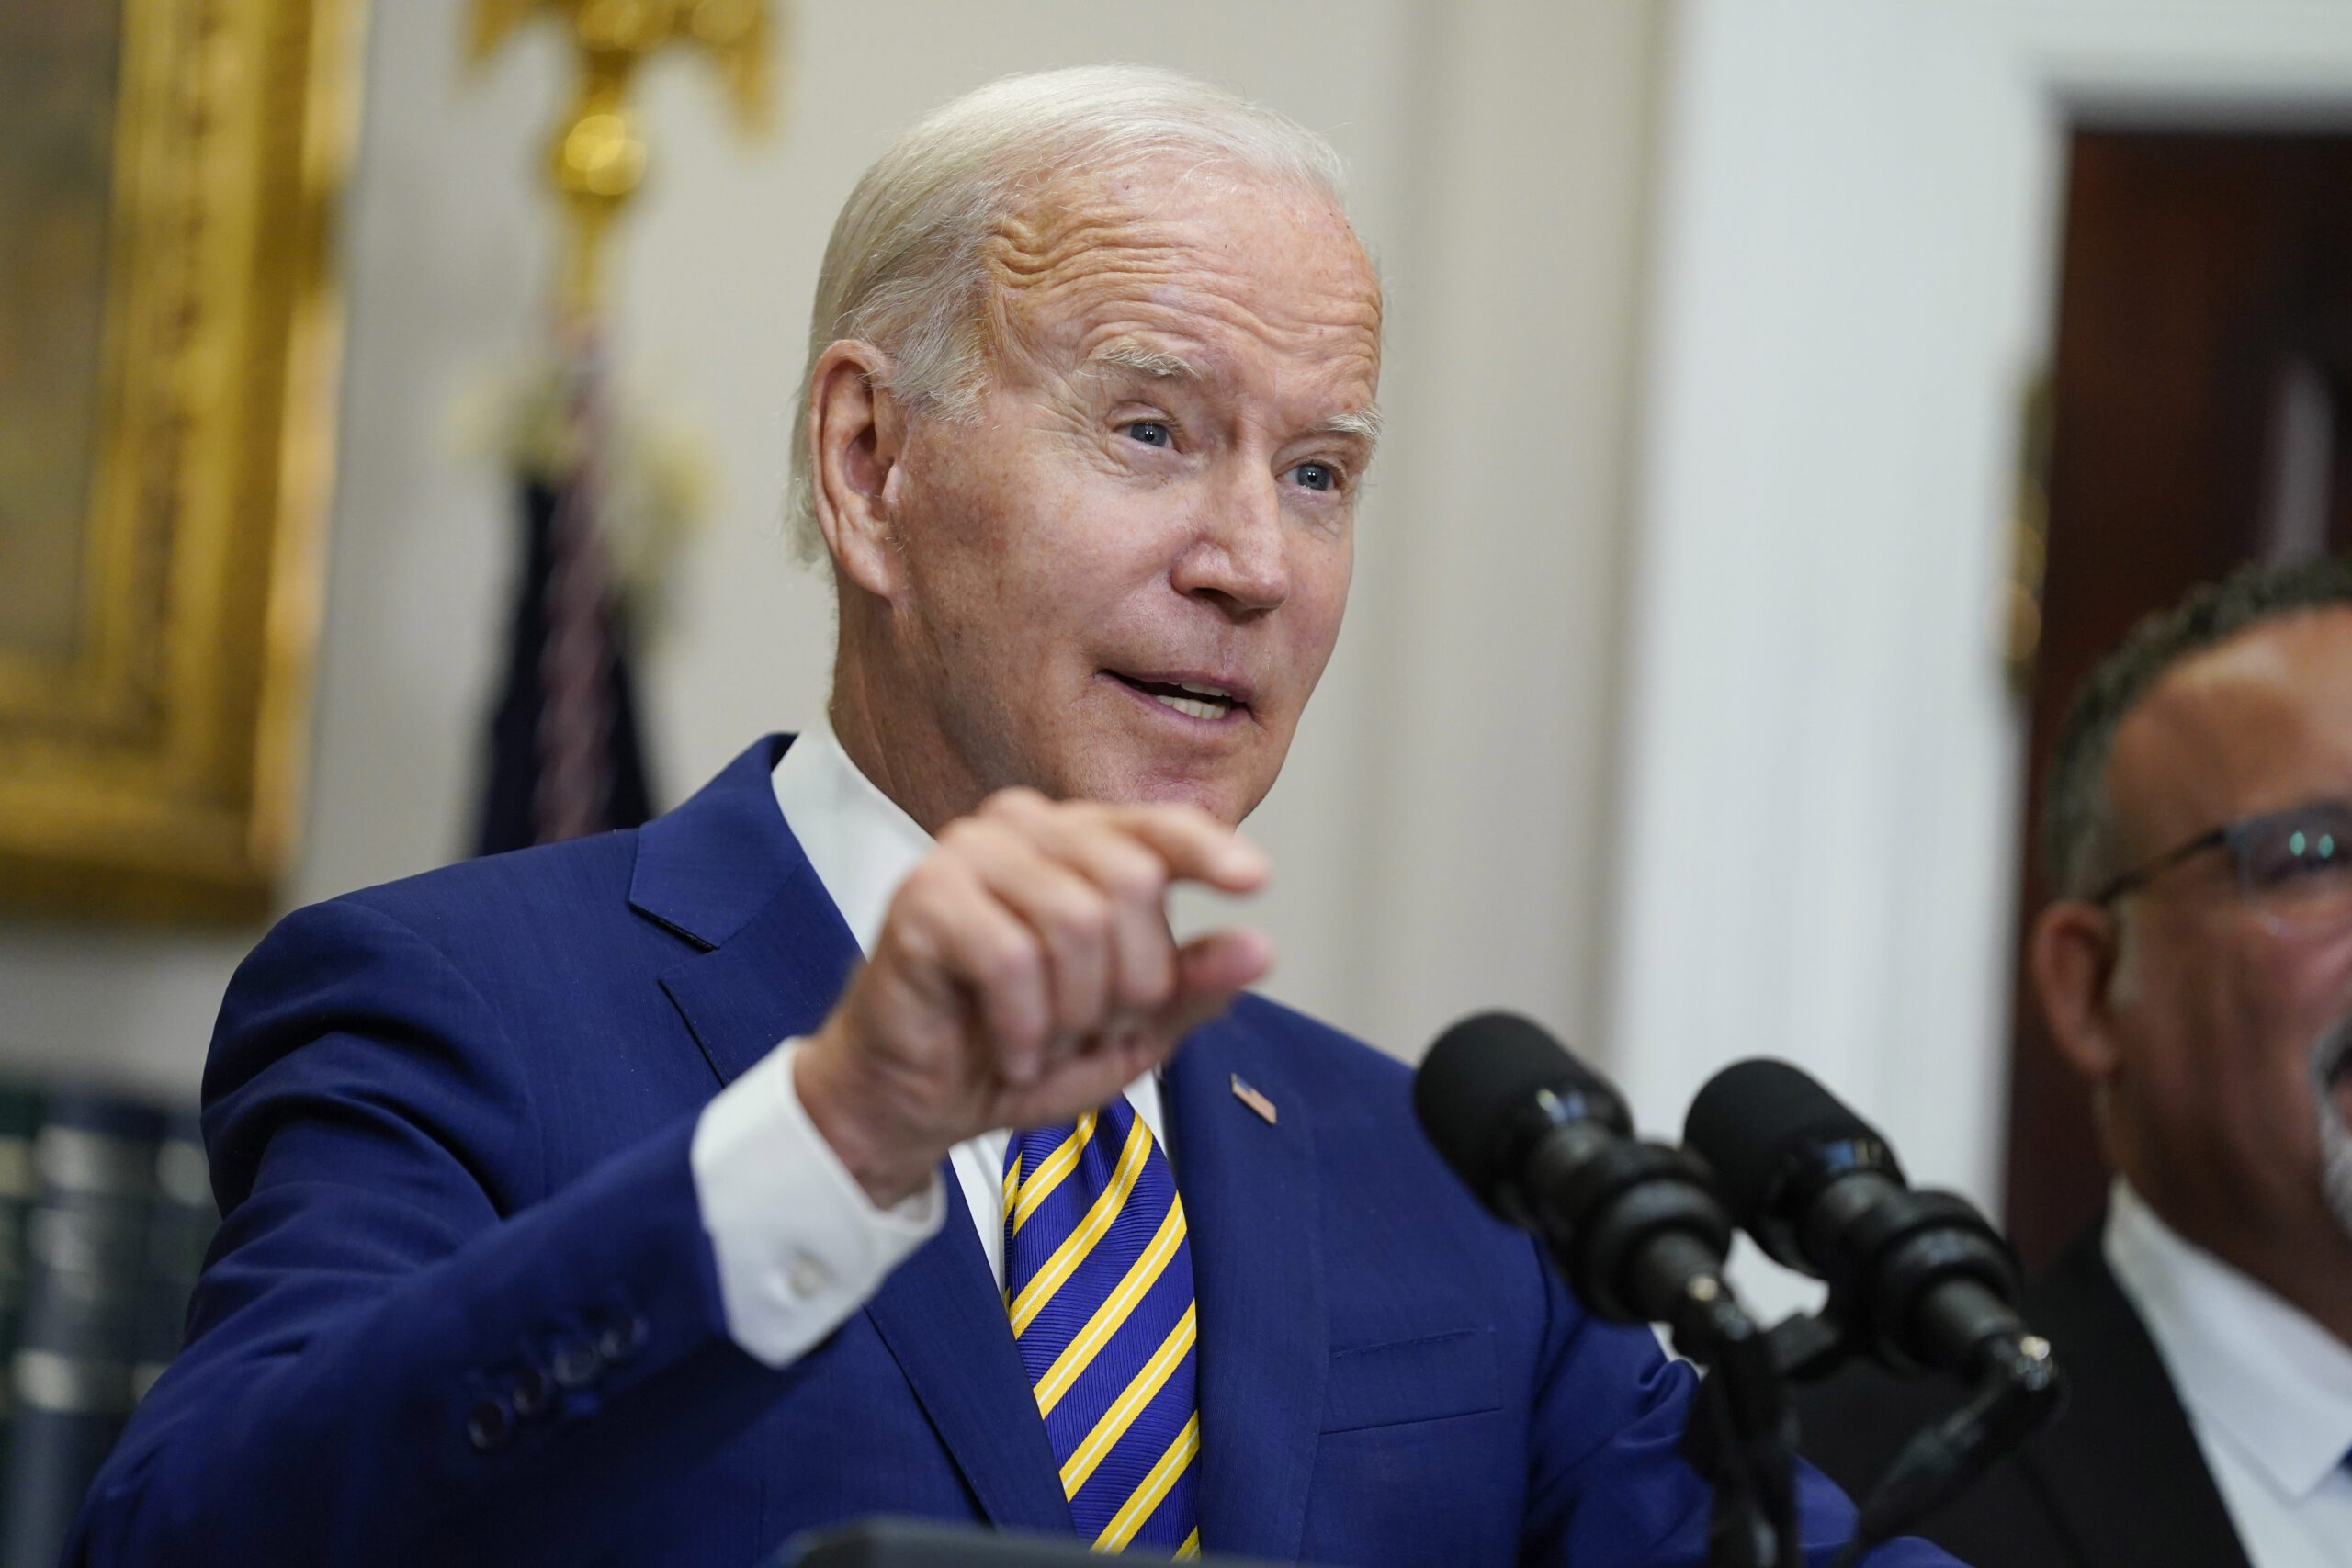 President Biden delivers remarks on loan forgiveness plan